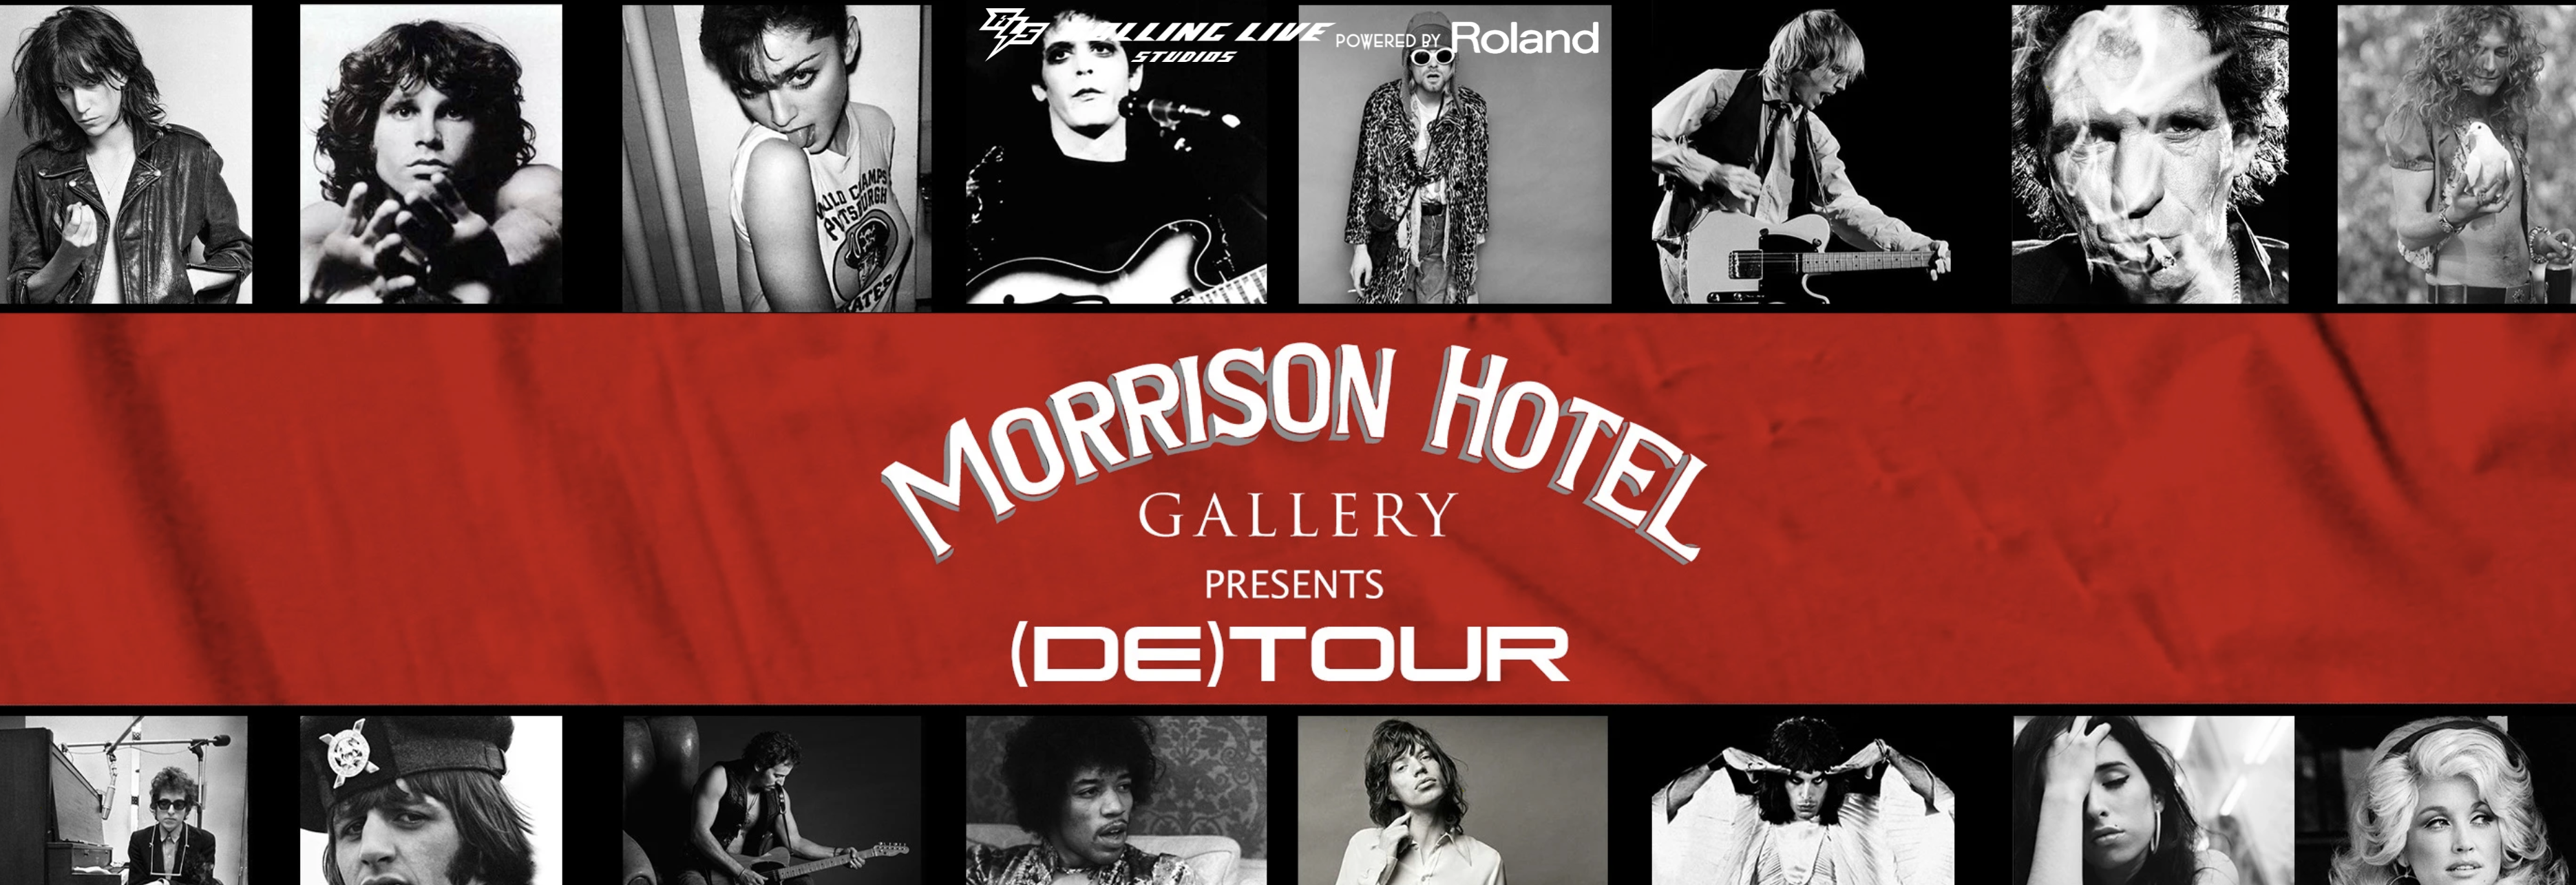 de tour_ Morrison Hotel Gallery